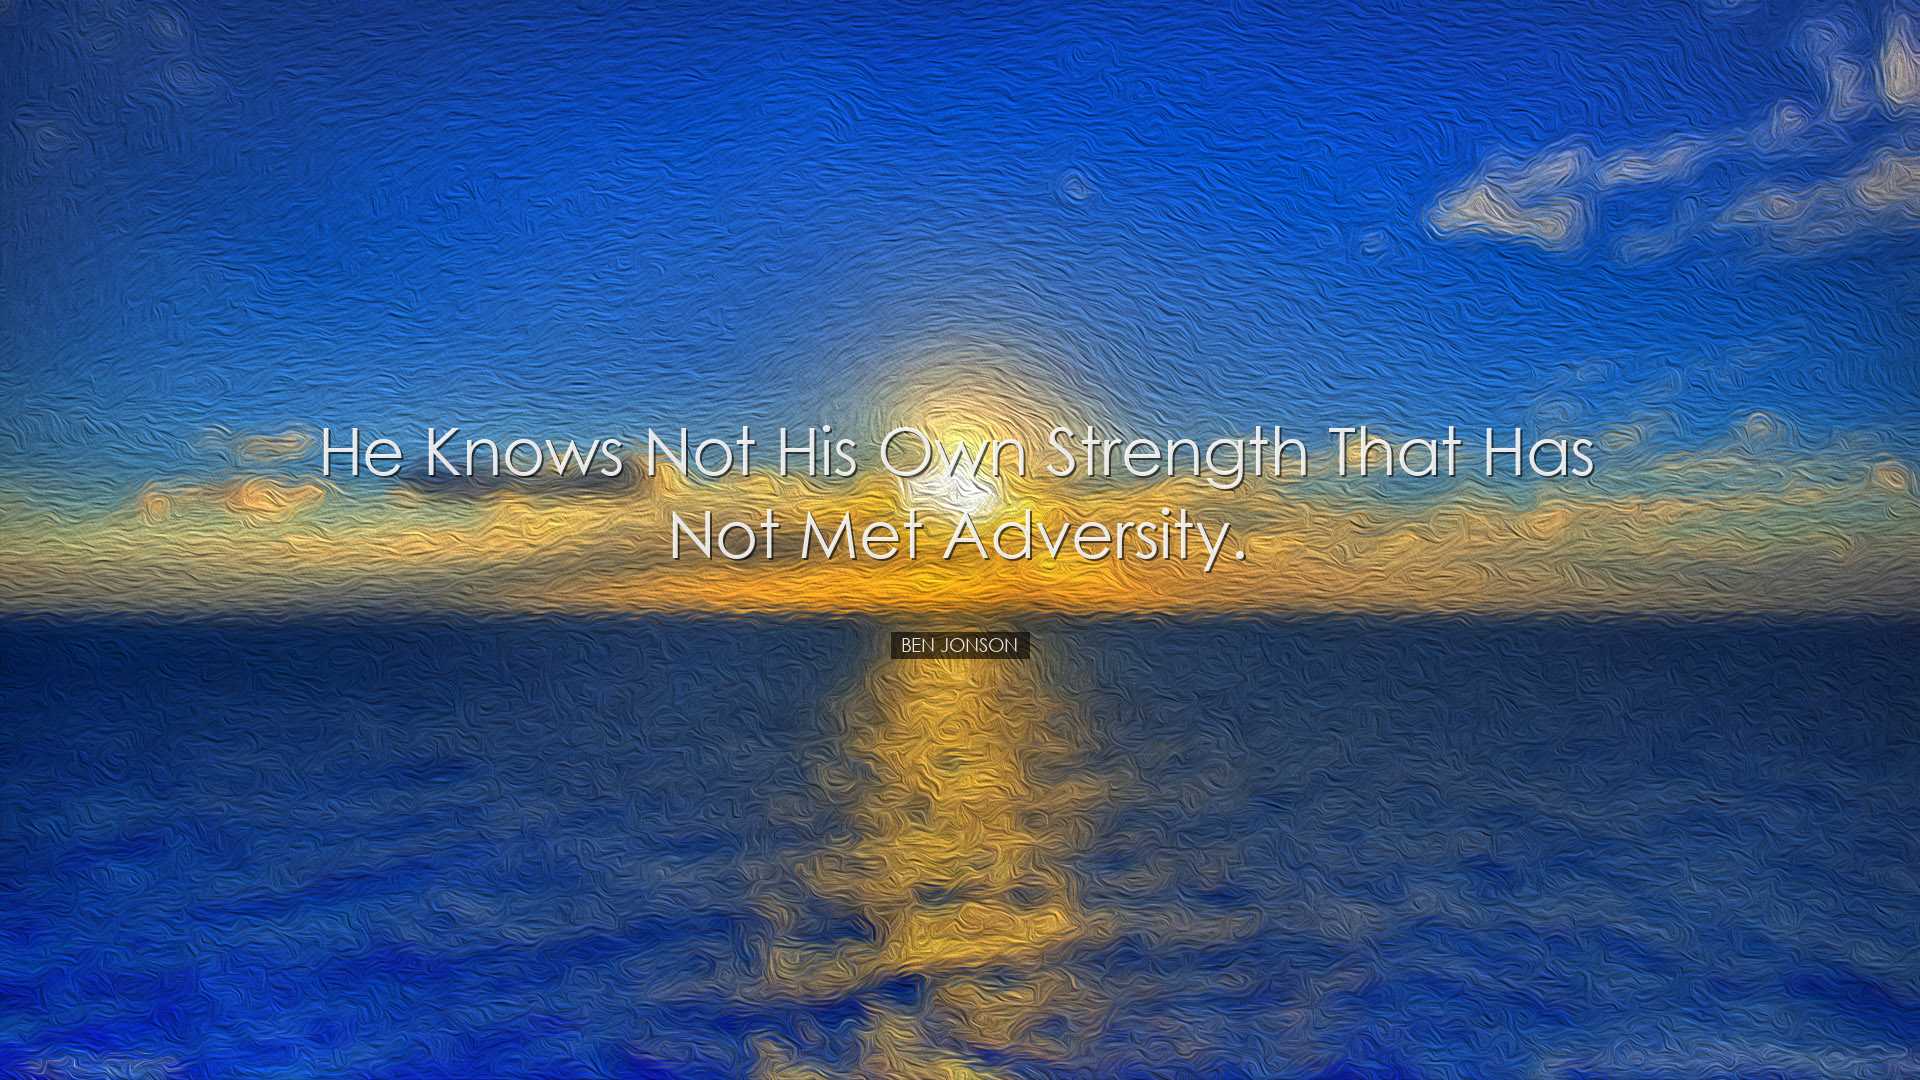 He knows not his own strength that has not met adversity. - Ben Jo